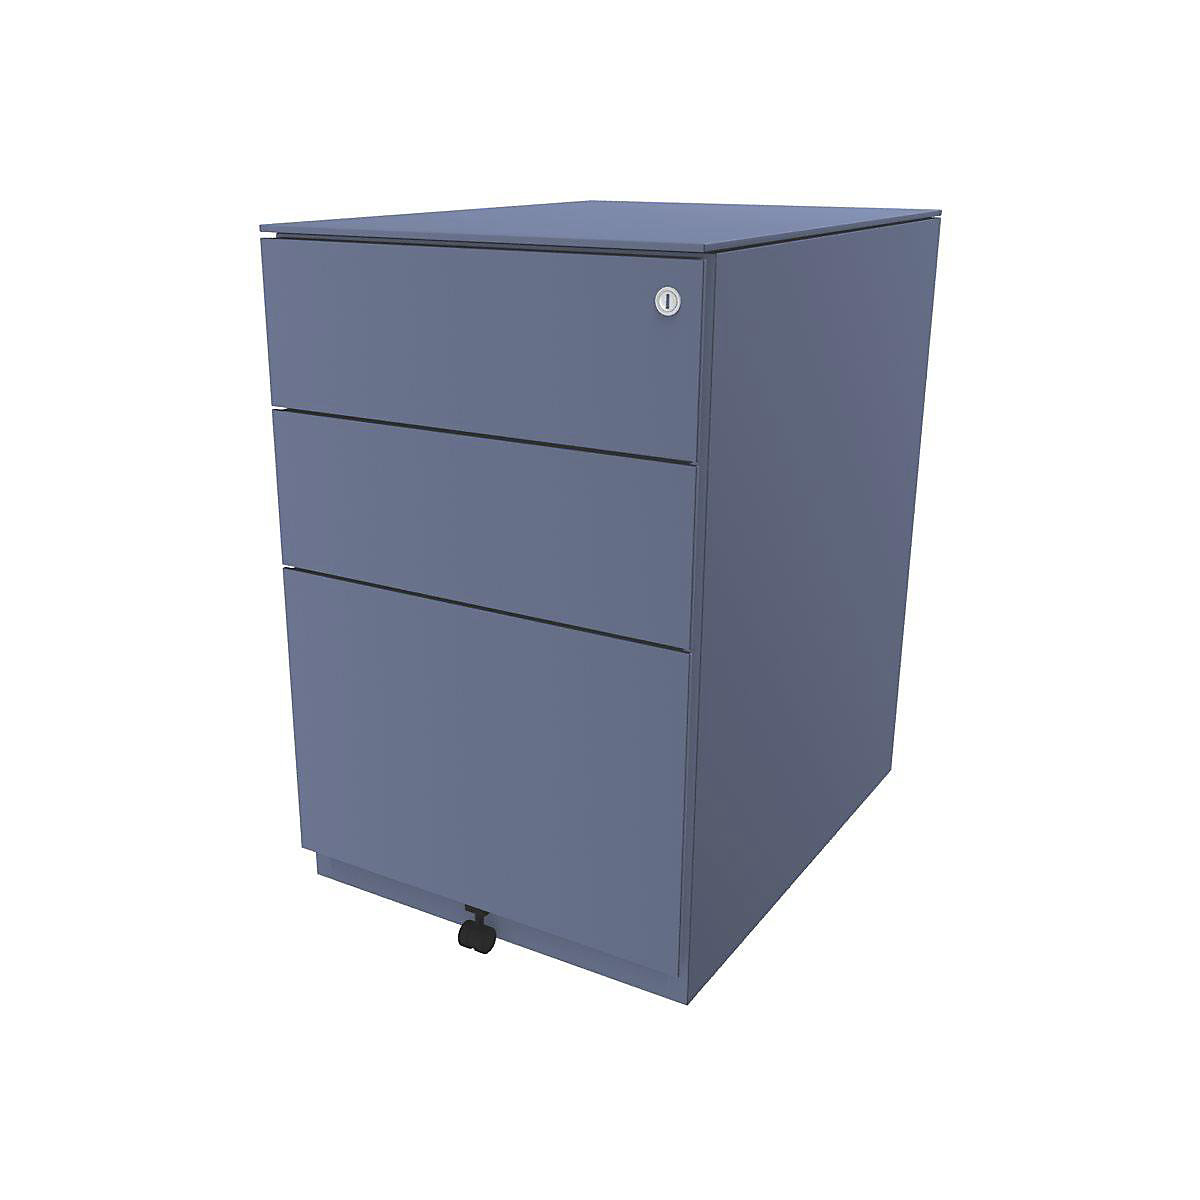 Pojazdný kontajner Note™, s 2 univerzálnymi zásuvkami, 1 závesná registratúra – BISLEY, v x š x h 652 x 420 x 565 mm, s hornou doskou, modrá-9